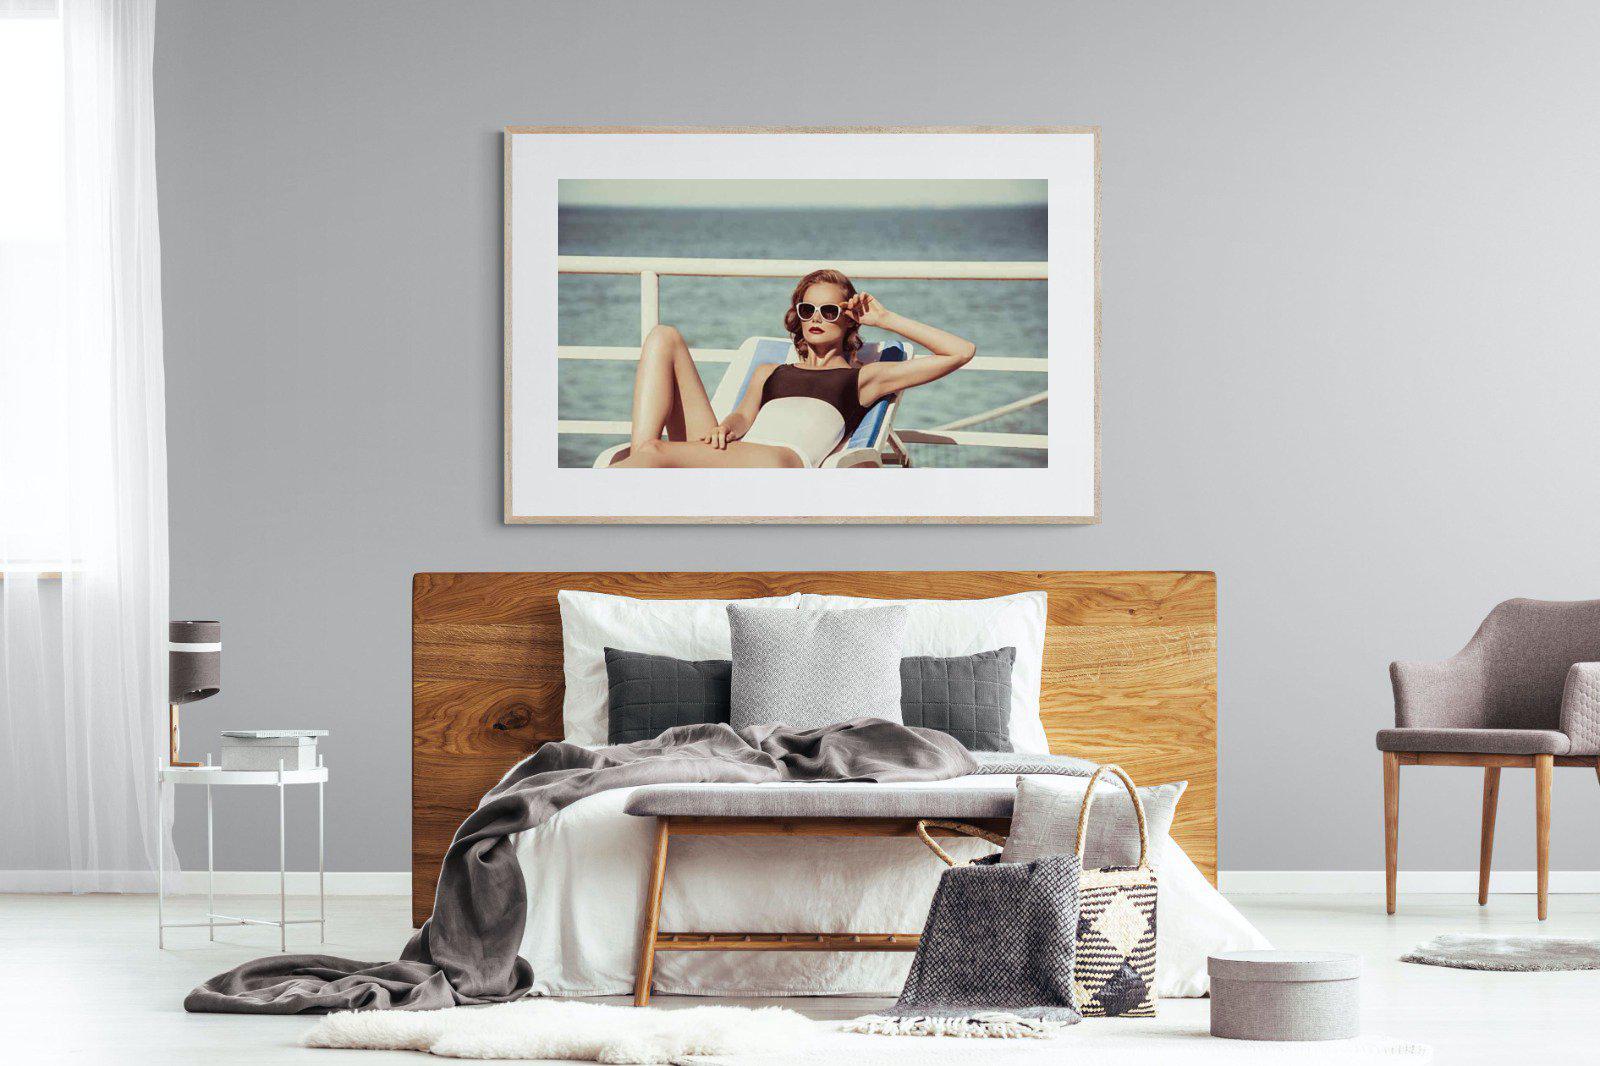 Golden Era-Wall_Art-150 x 100cm-Framed Print-Wood-Pixalot